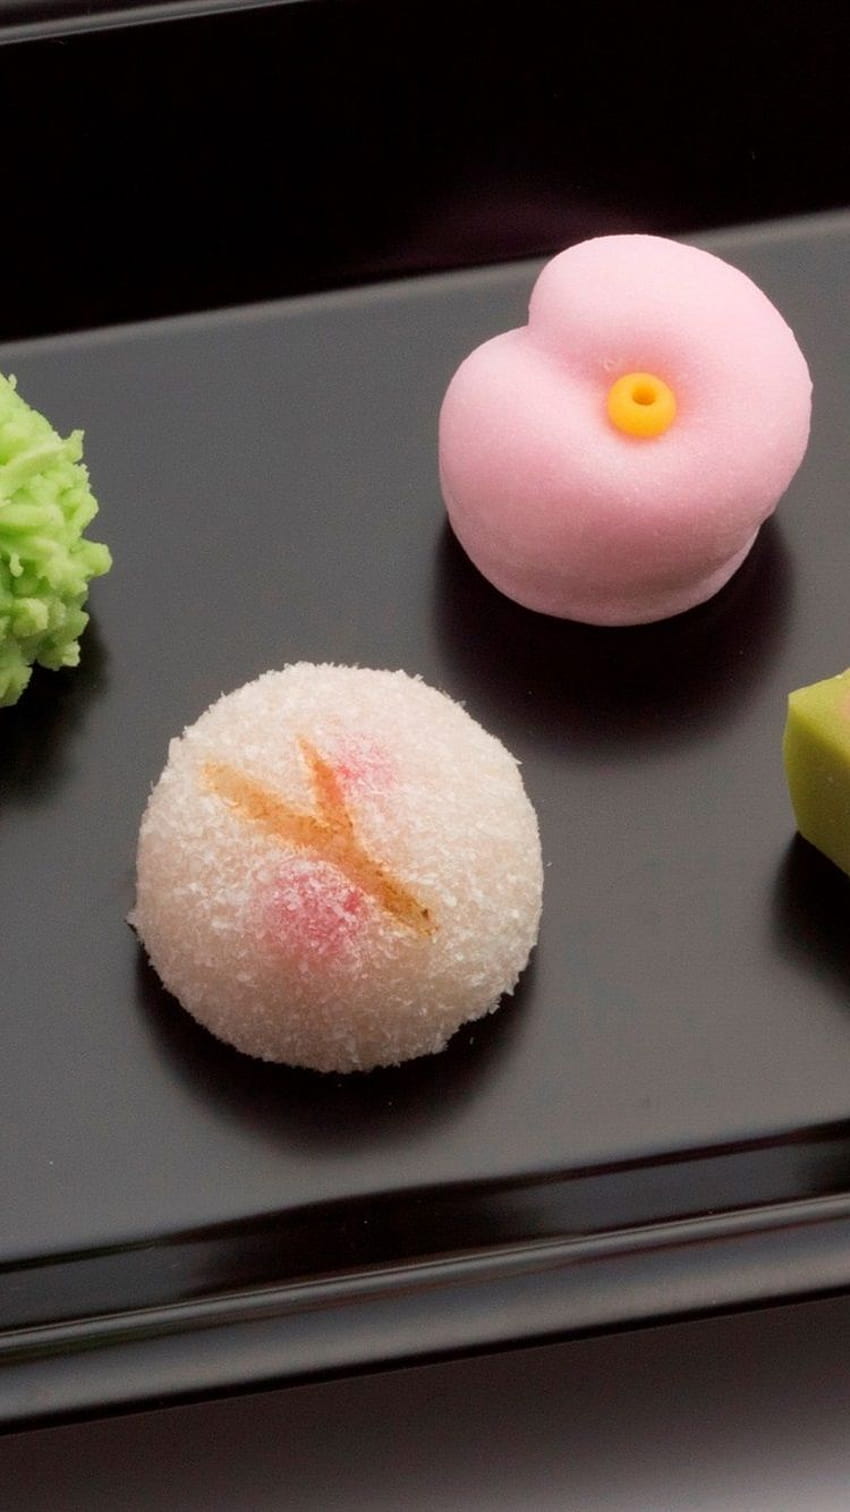 Desserts, gourmet, Japanese ...best HD phone wallpaper